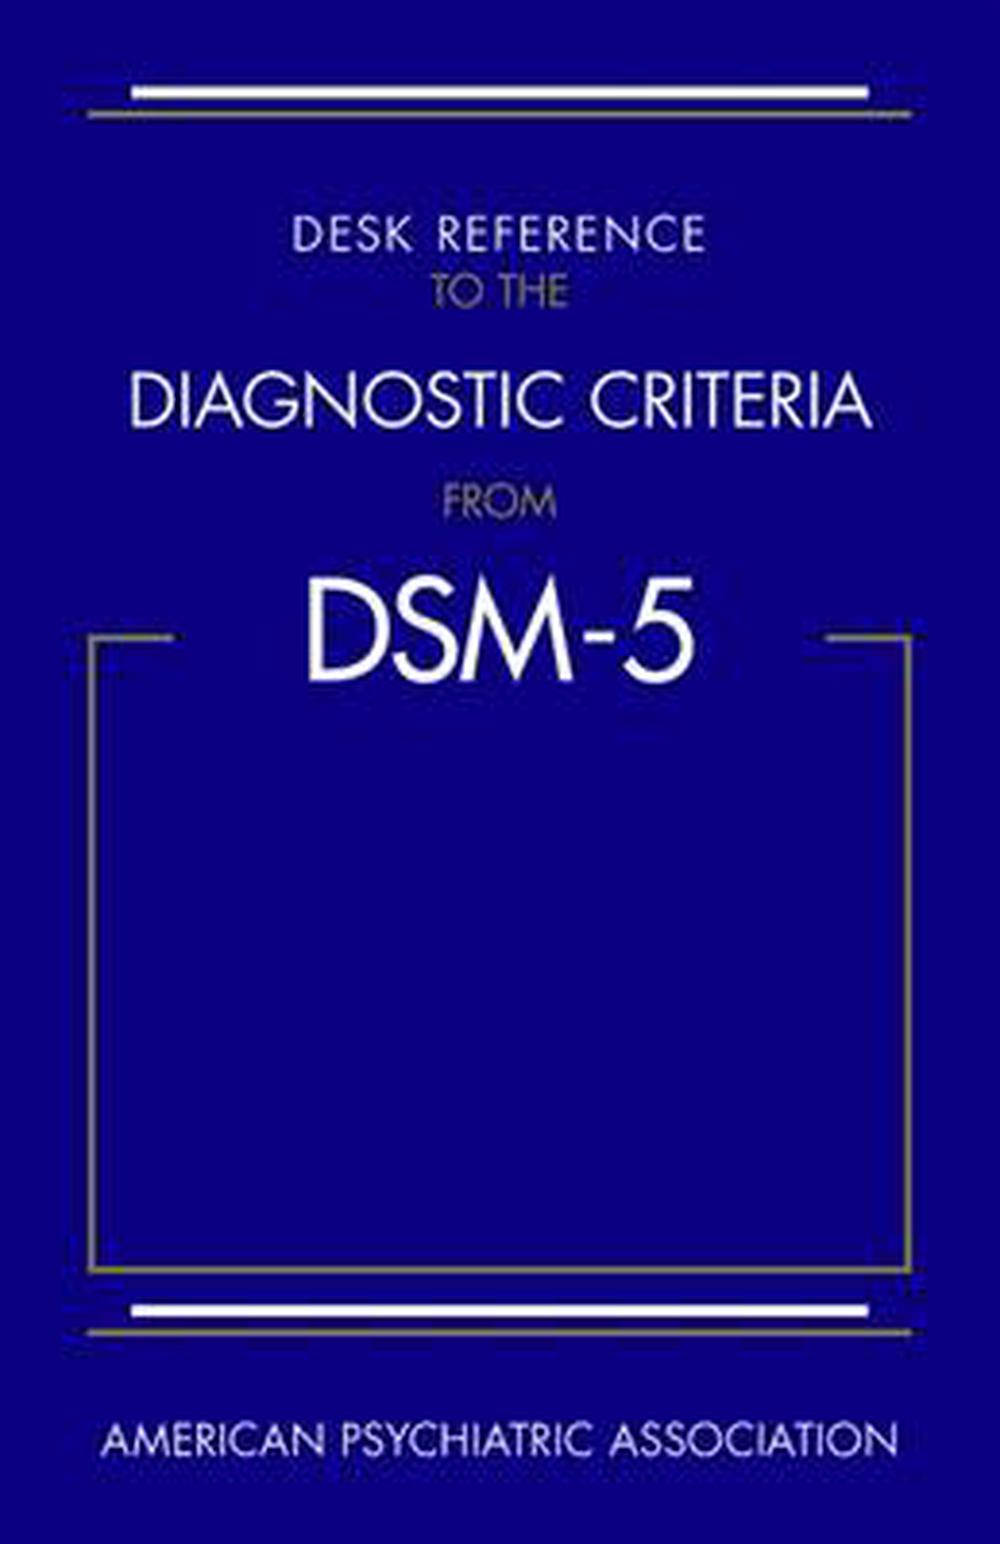 dsm 5 criteria for asd